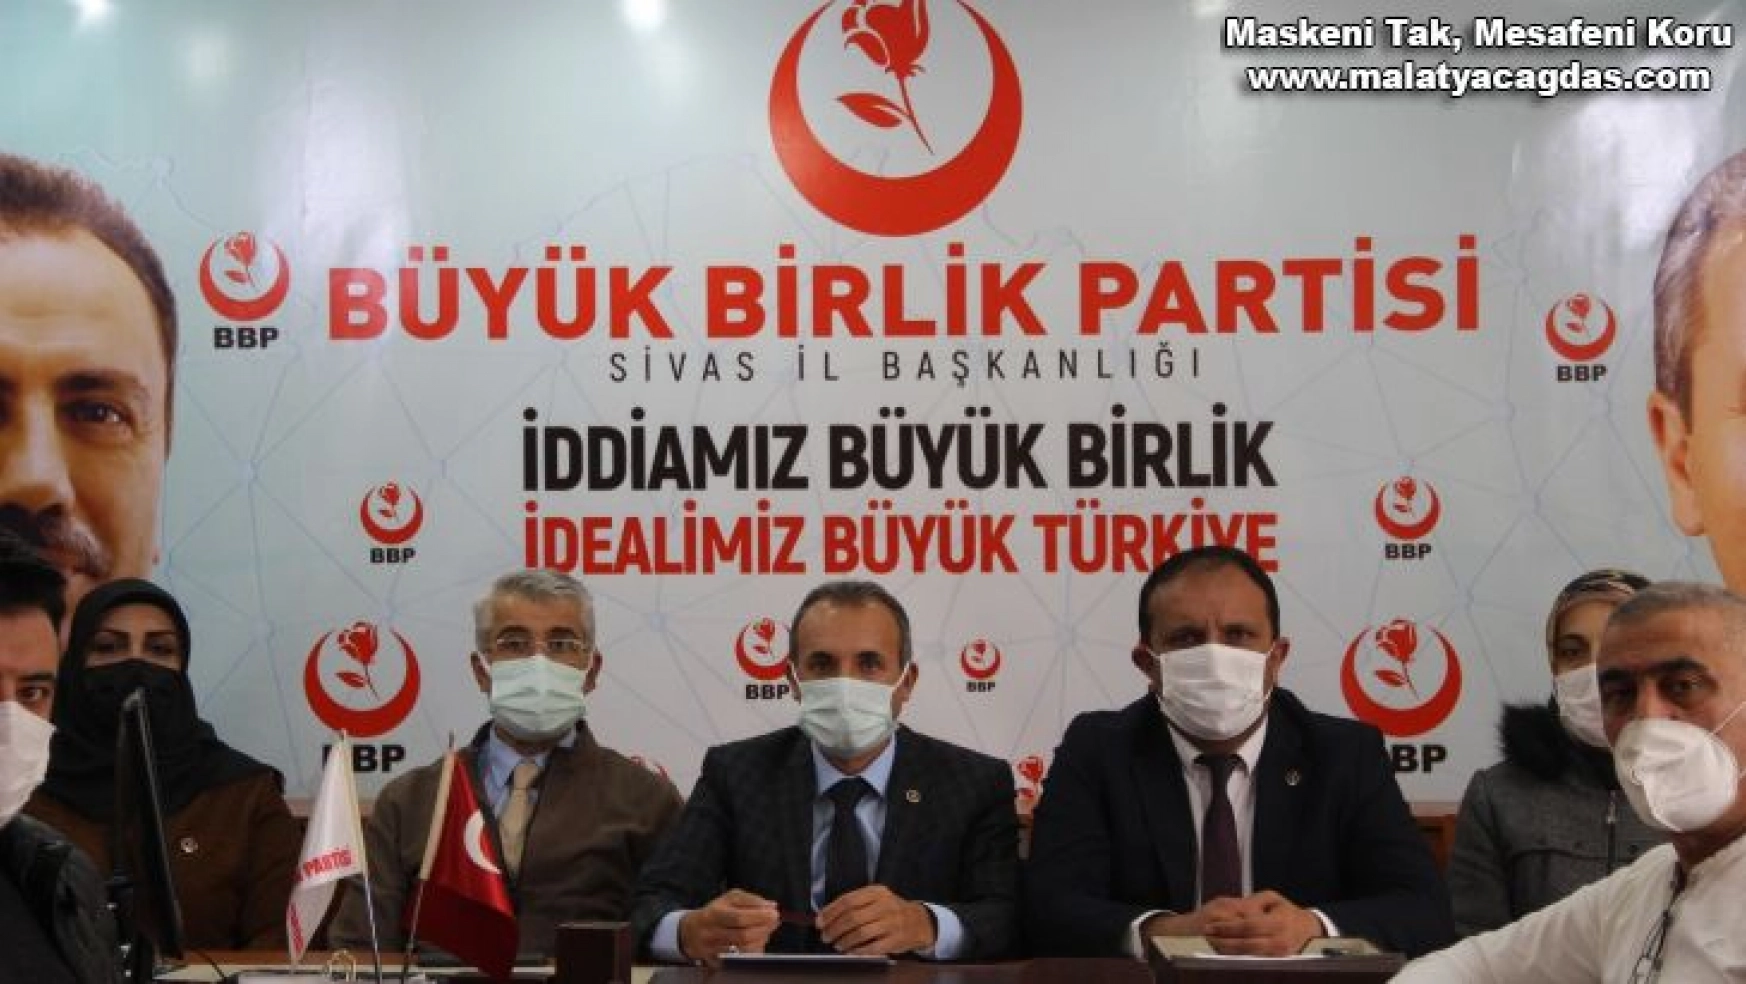 BBP'de Sivas merkez ilçe kongresi 21 Nisan'da yapılacak